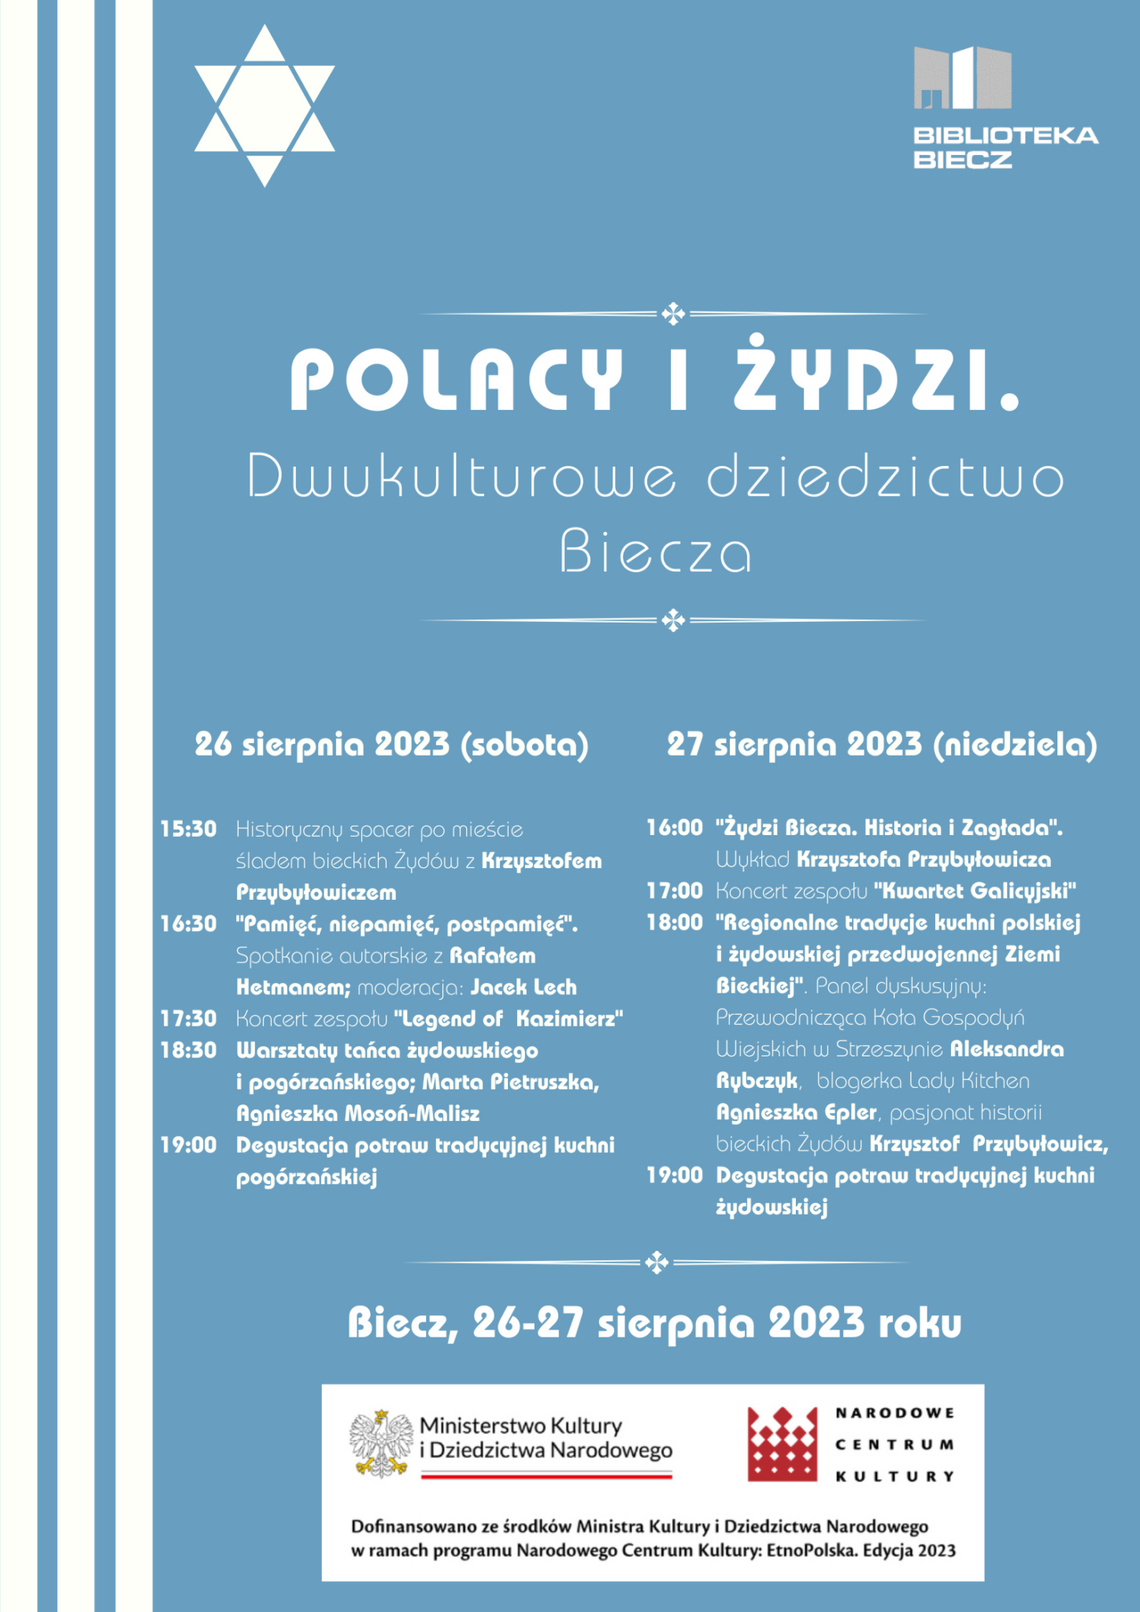 Polacy i Żydzi. Dwukulturowe dziedzictwo Biecza – Biblioteka Biecz | halogorlice.info